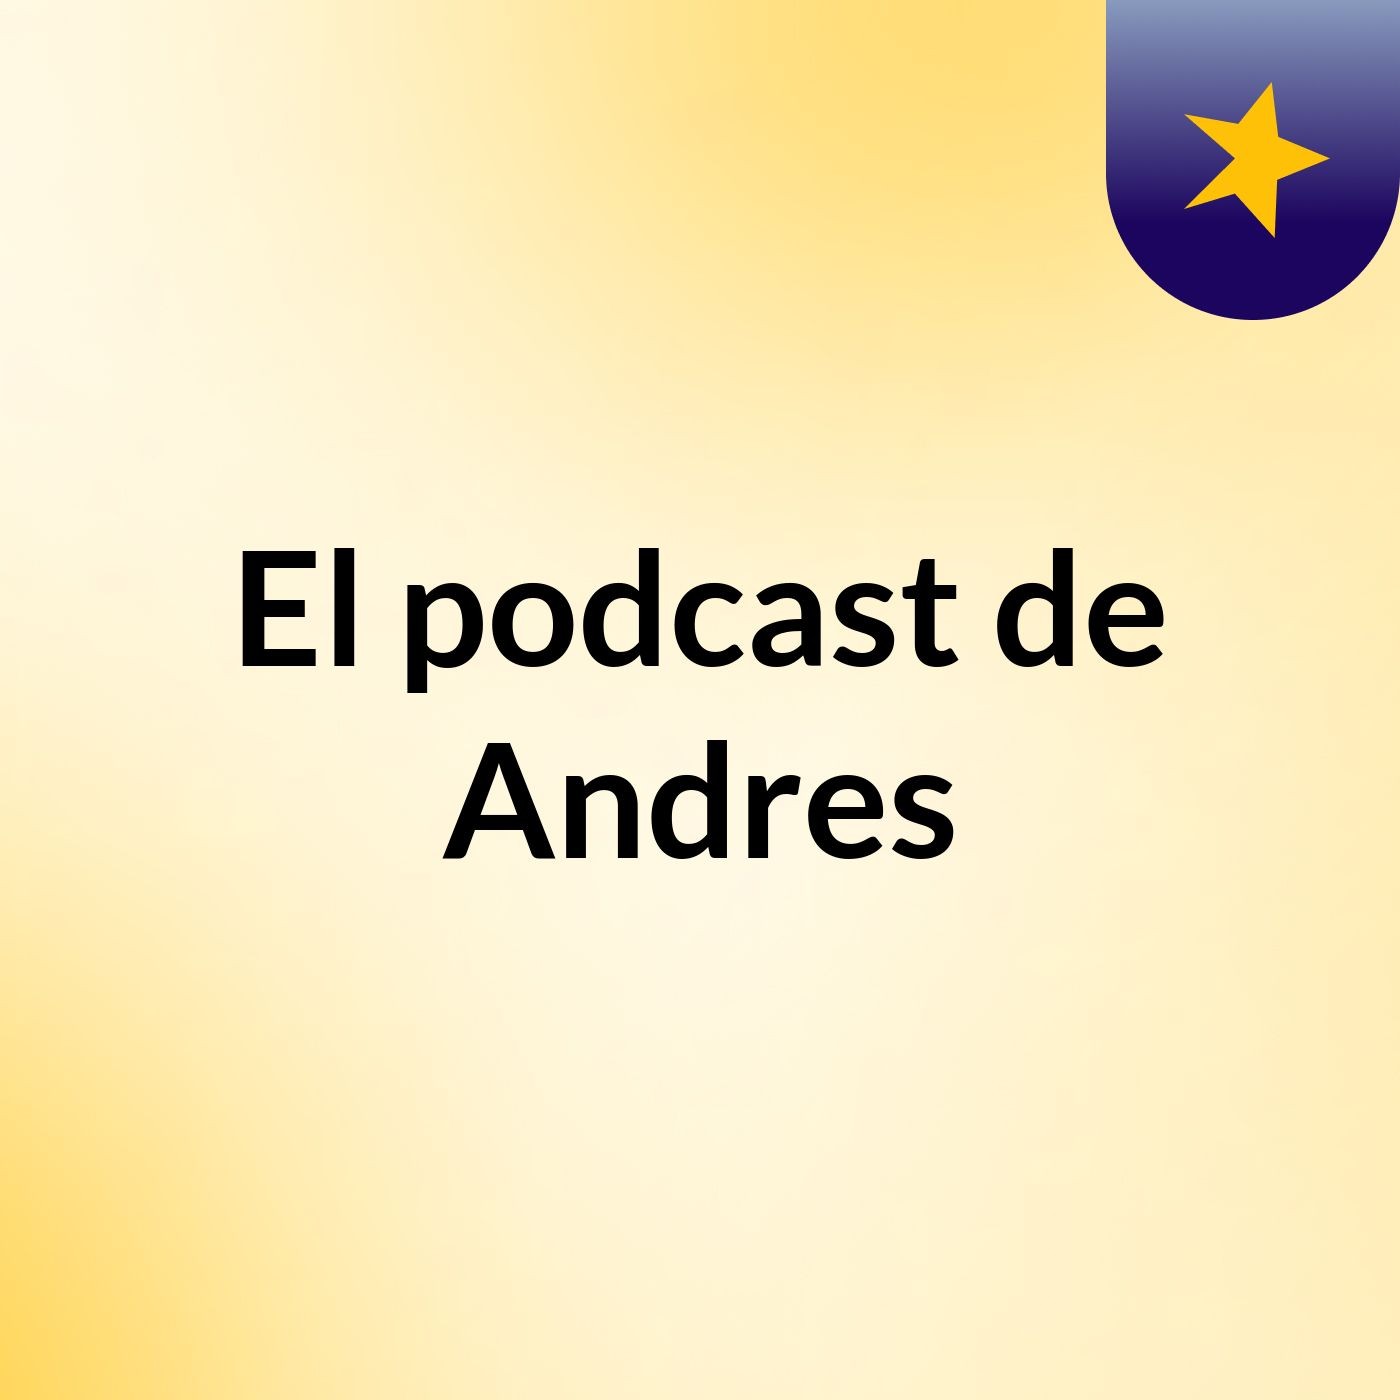 El podcast de Andres